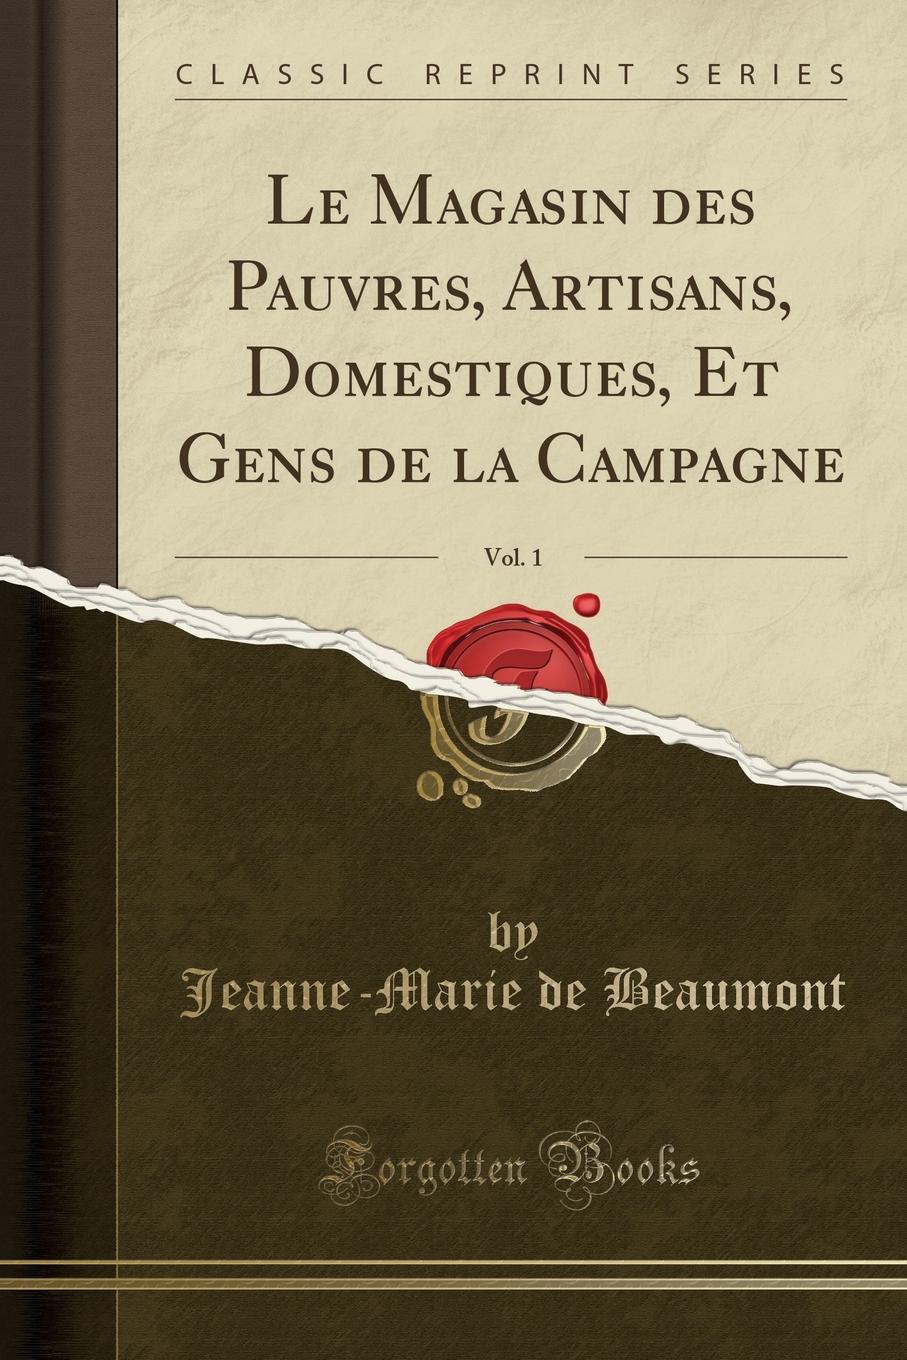 Le Magasin des Pauvres, Artisans, Domestiques, Et Gens de la Campagne, Vol. 1 (Classic Reprint)